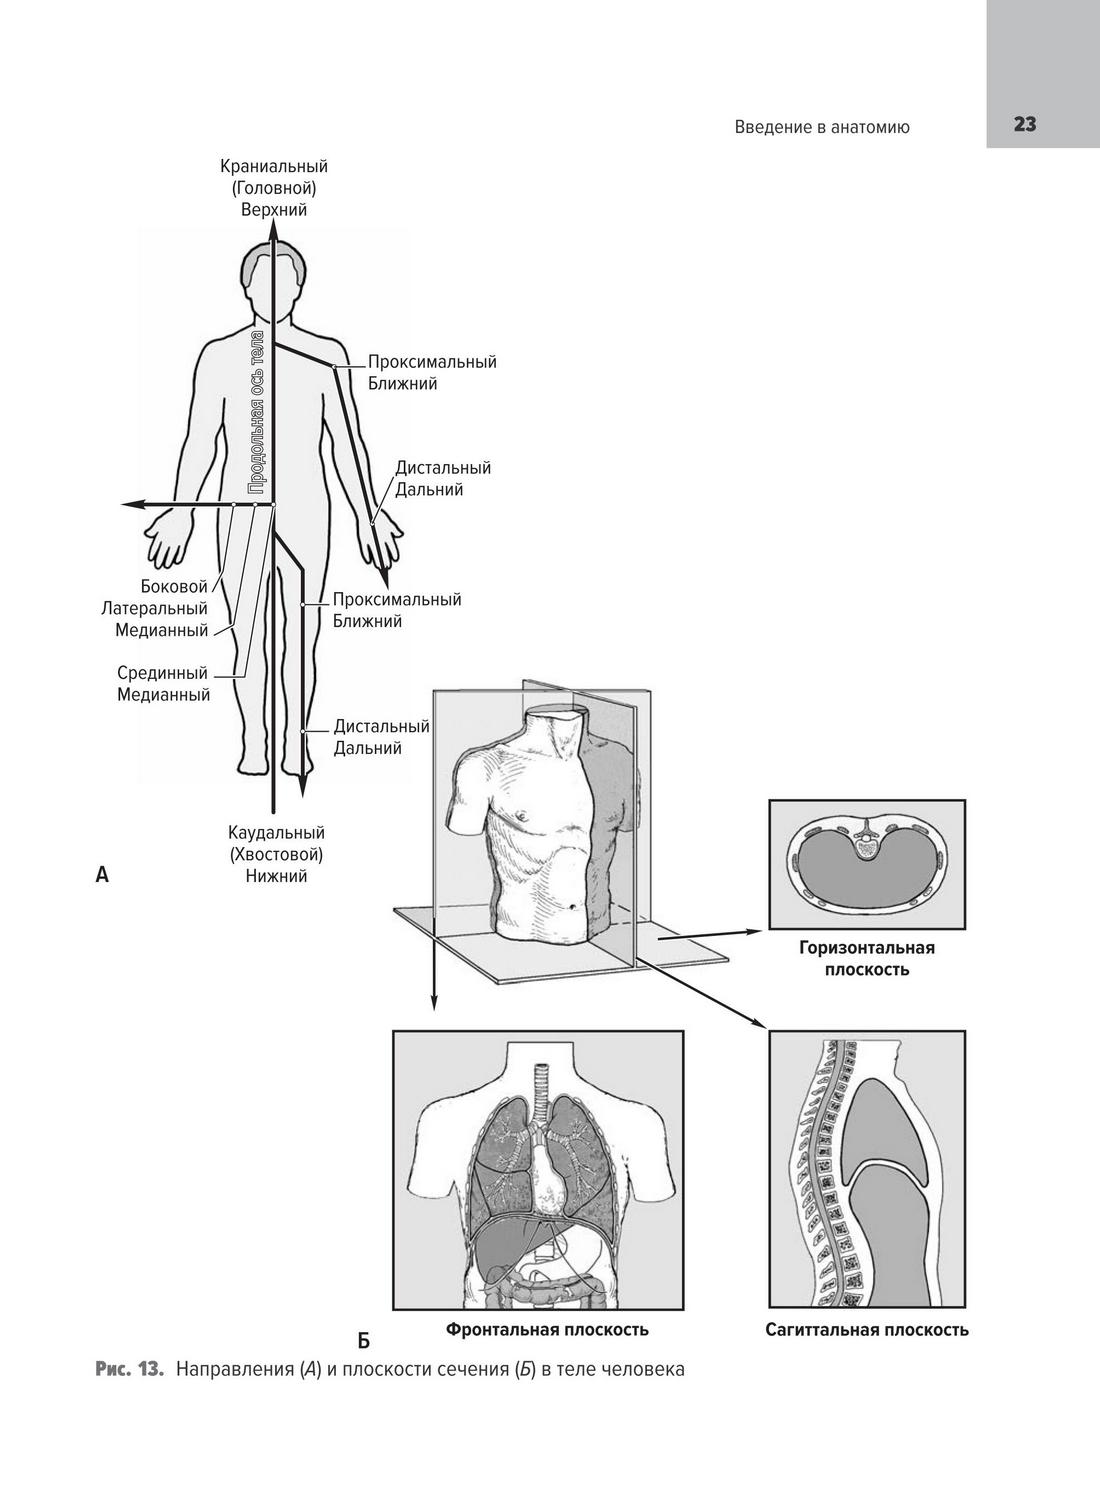 Направления (А) и плоскости сечения (Б) в теле человека